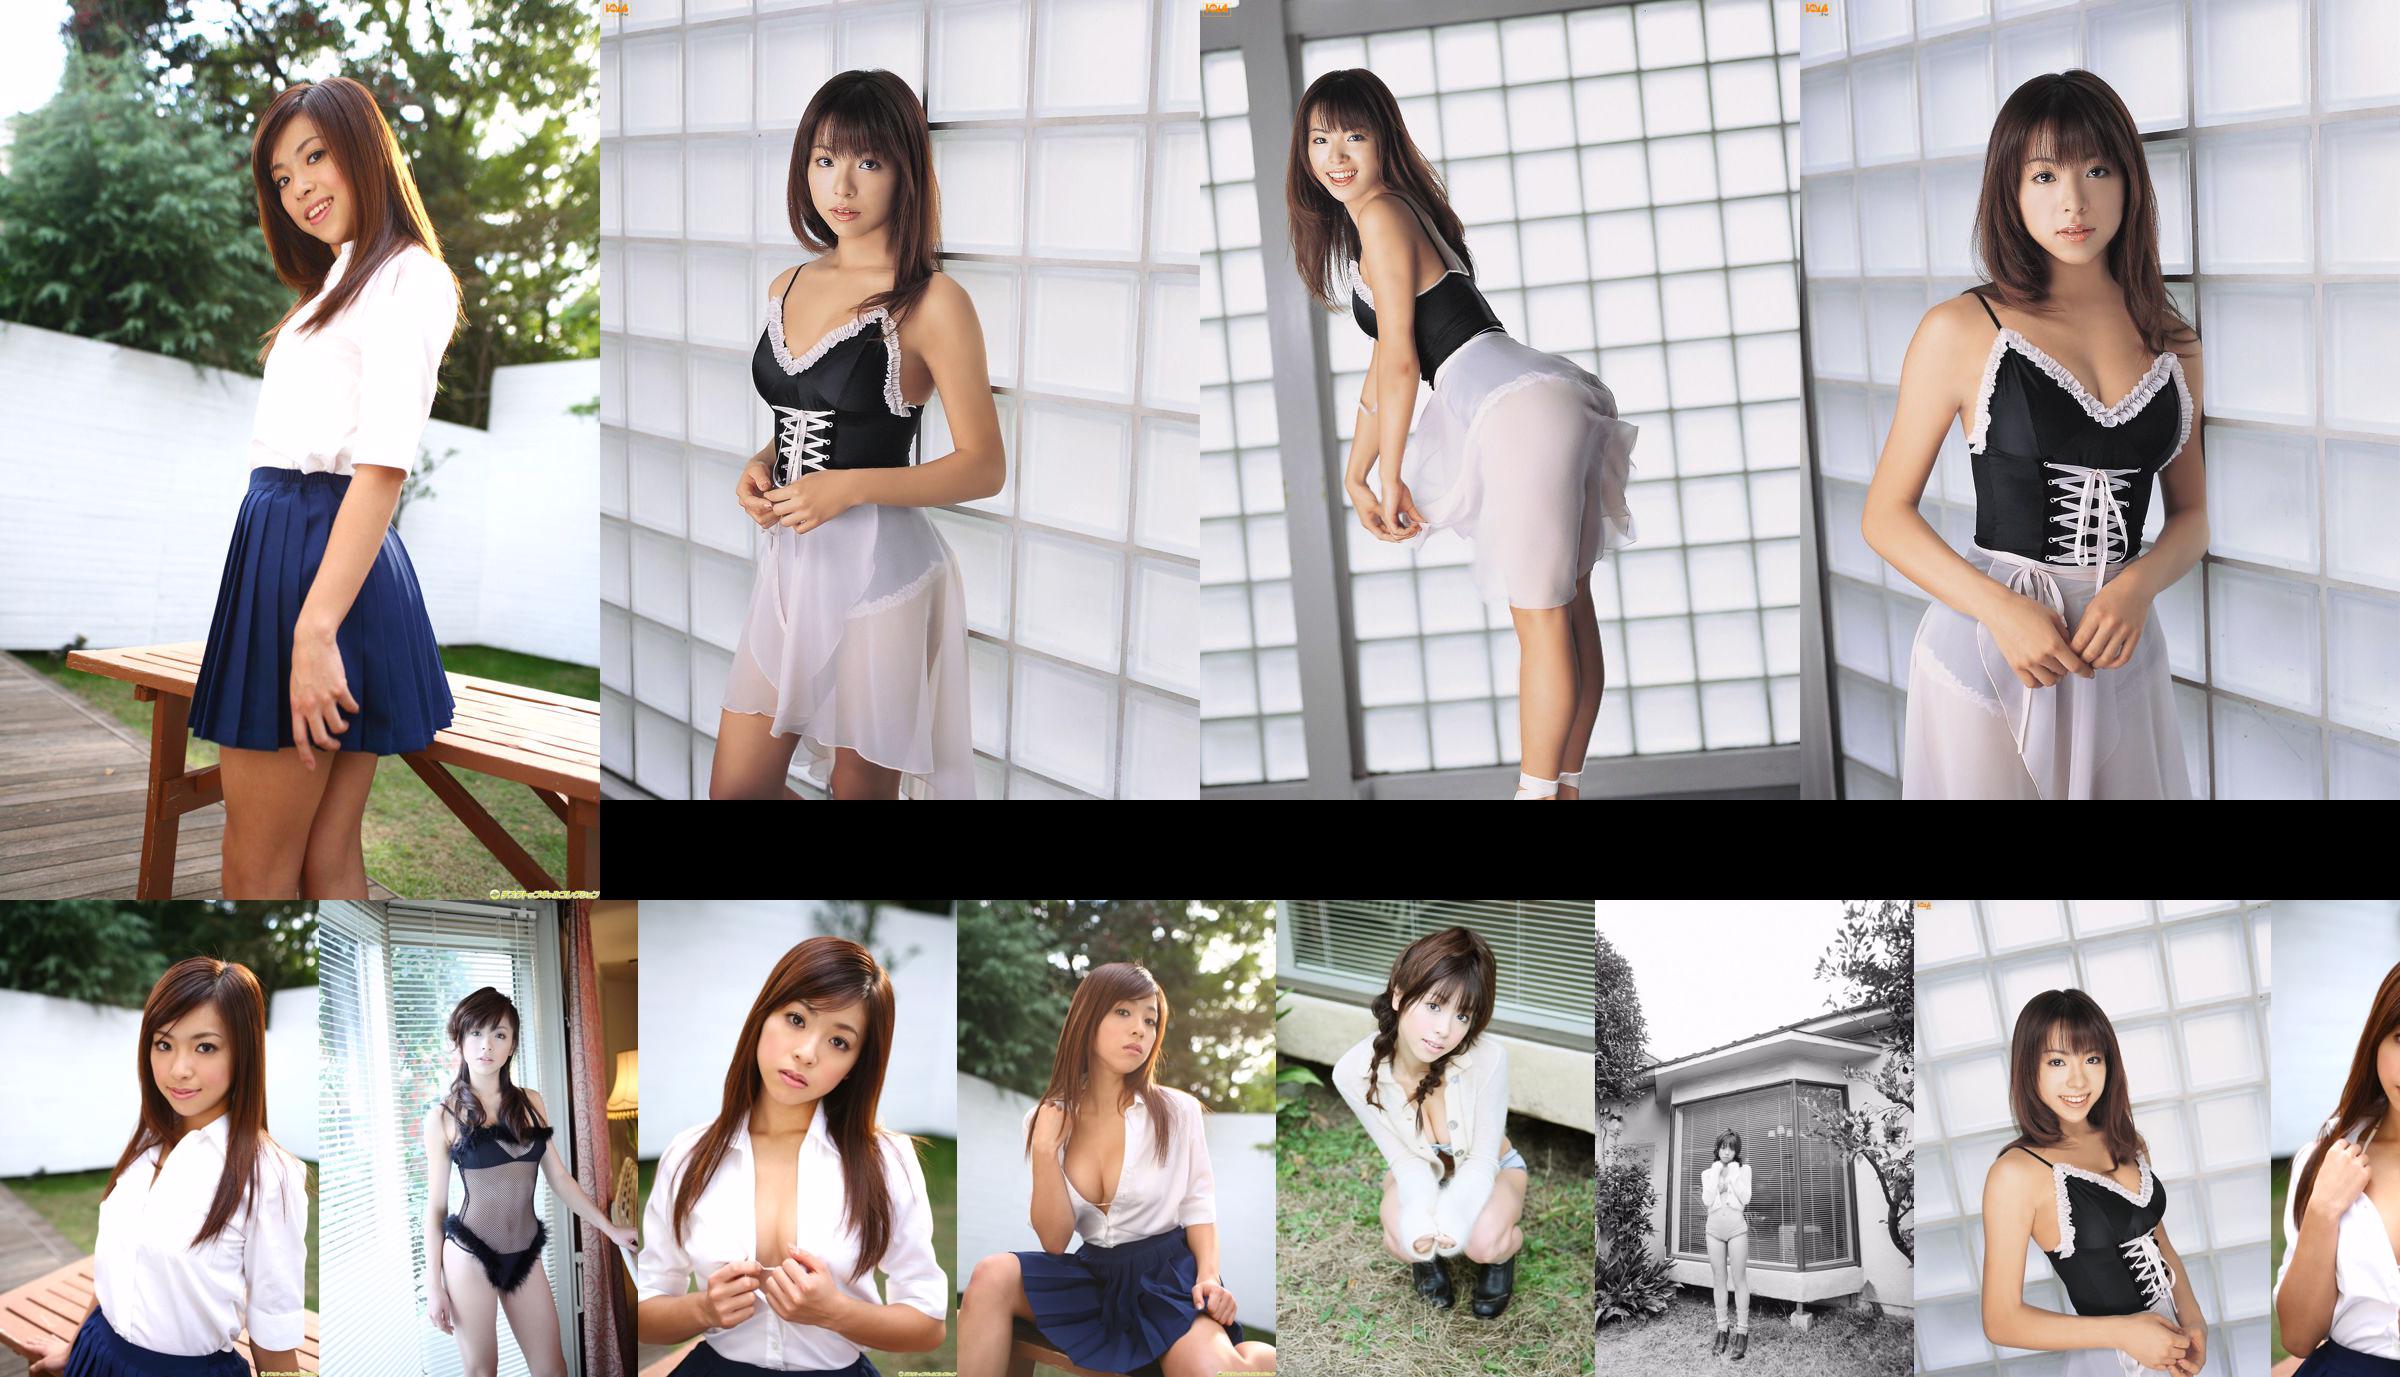 [DGC] N ° 540 Yu Akiyama / Akiyama Top Idols No.4c135f Page 1